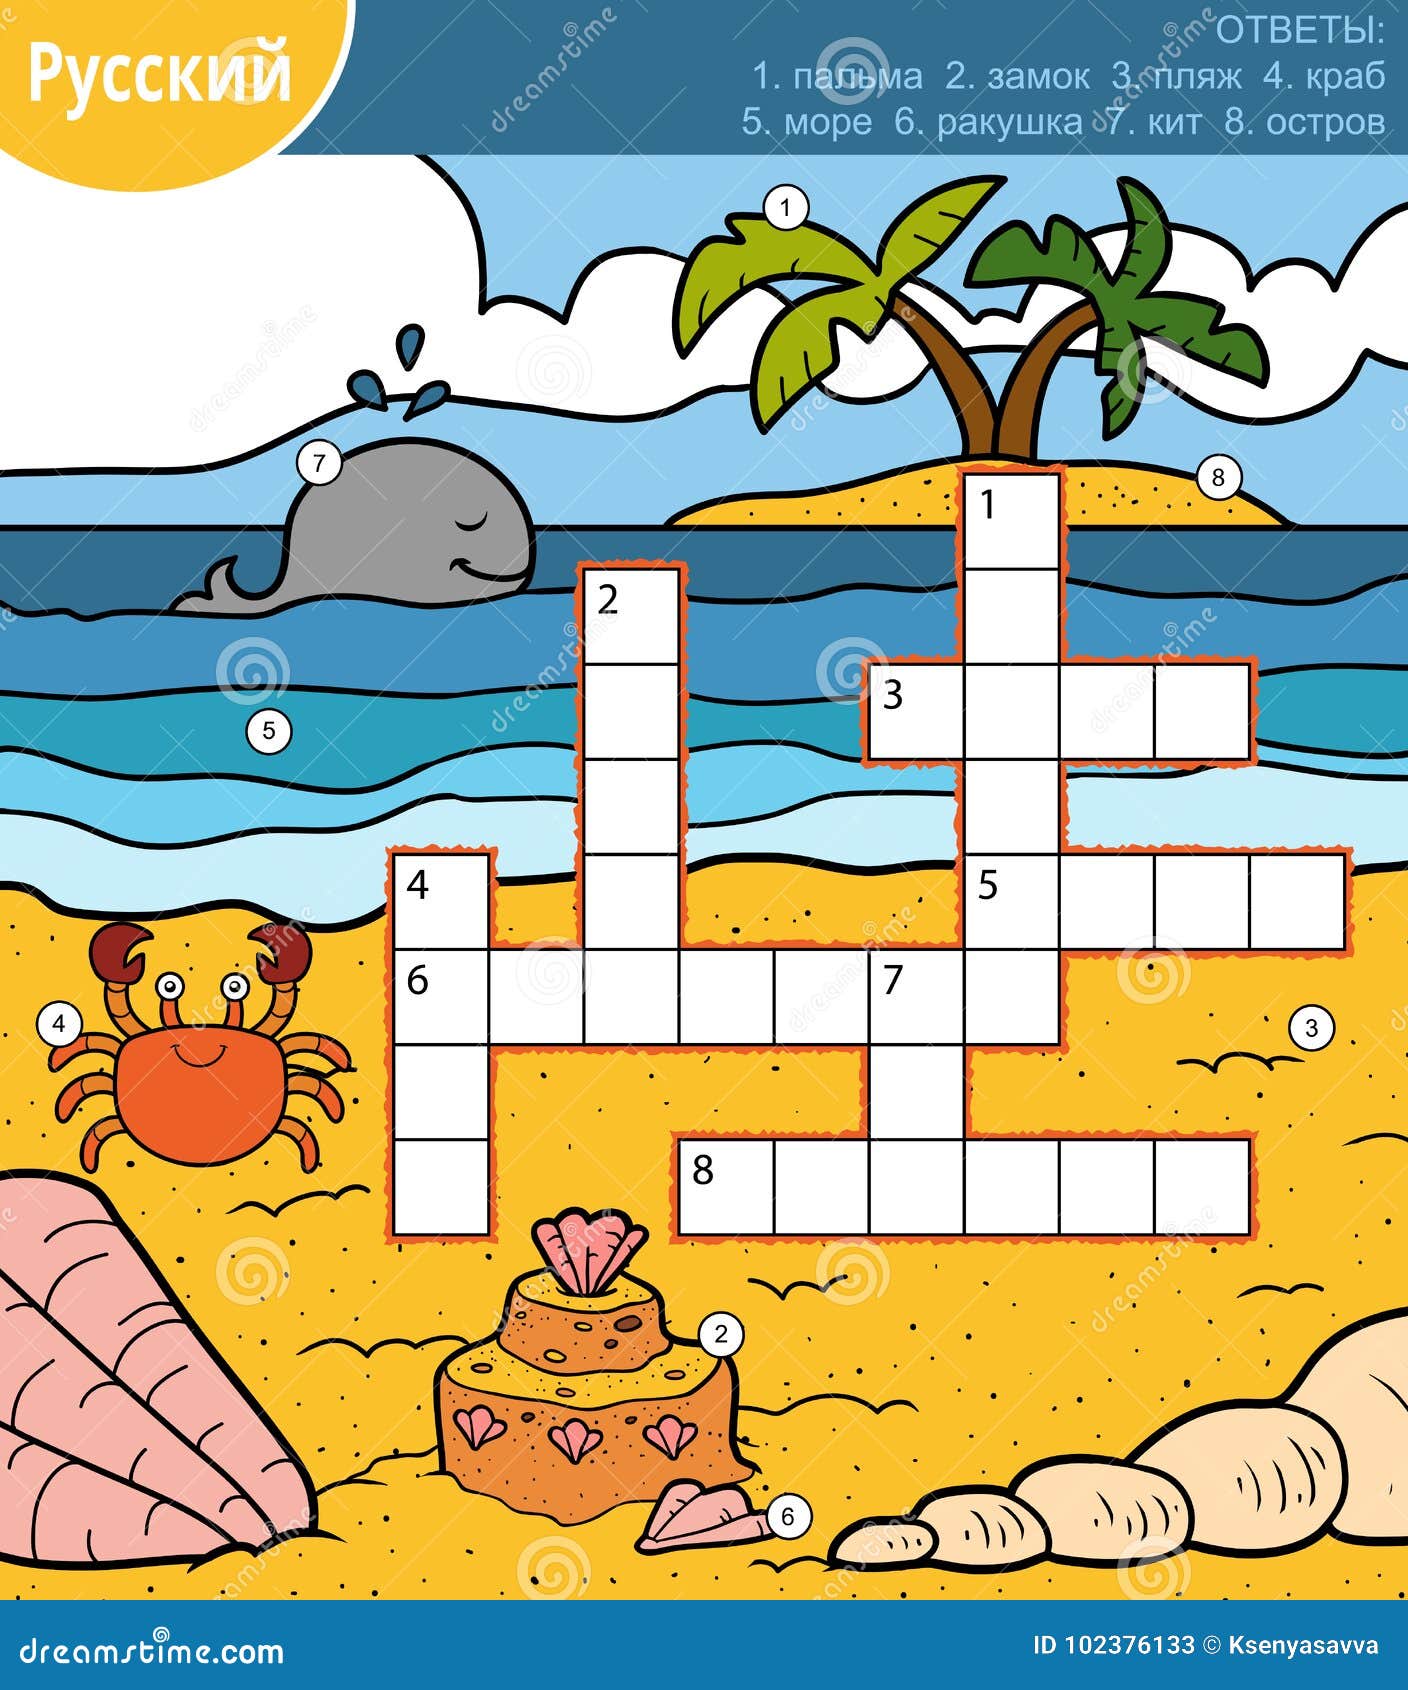 Crossword more. Кроссворд морские обитатели для детей. Кроссворд для детей про море. Морской сканворд. Кроссворд на морскую тему.